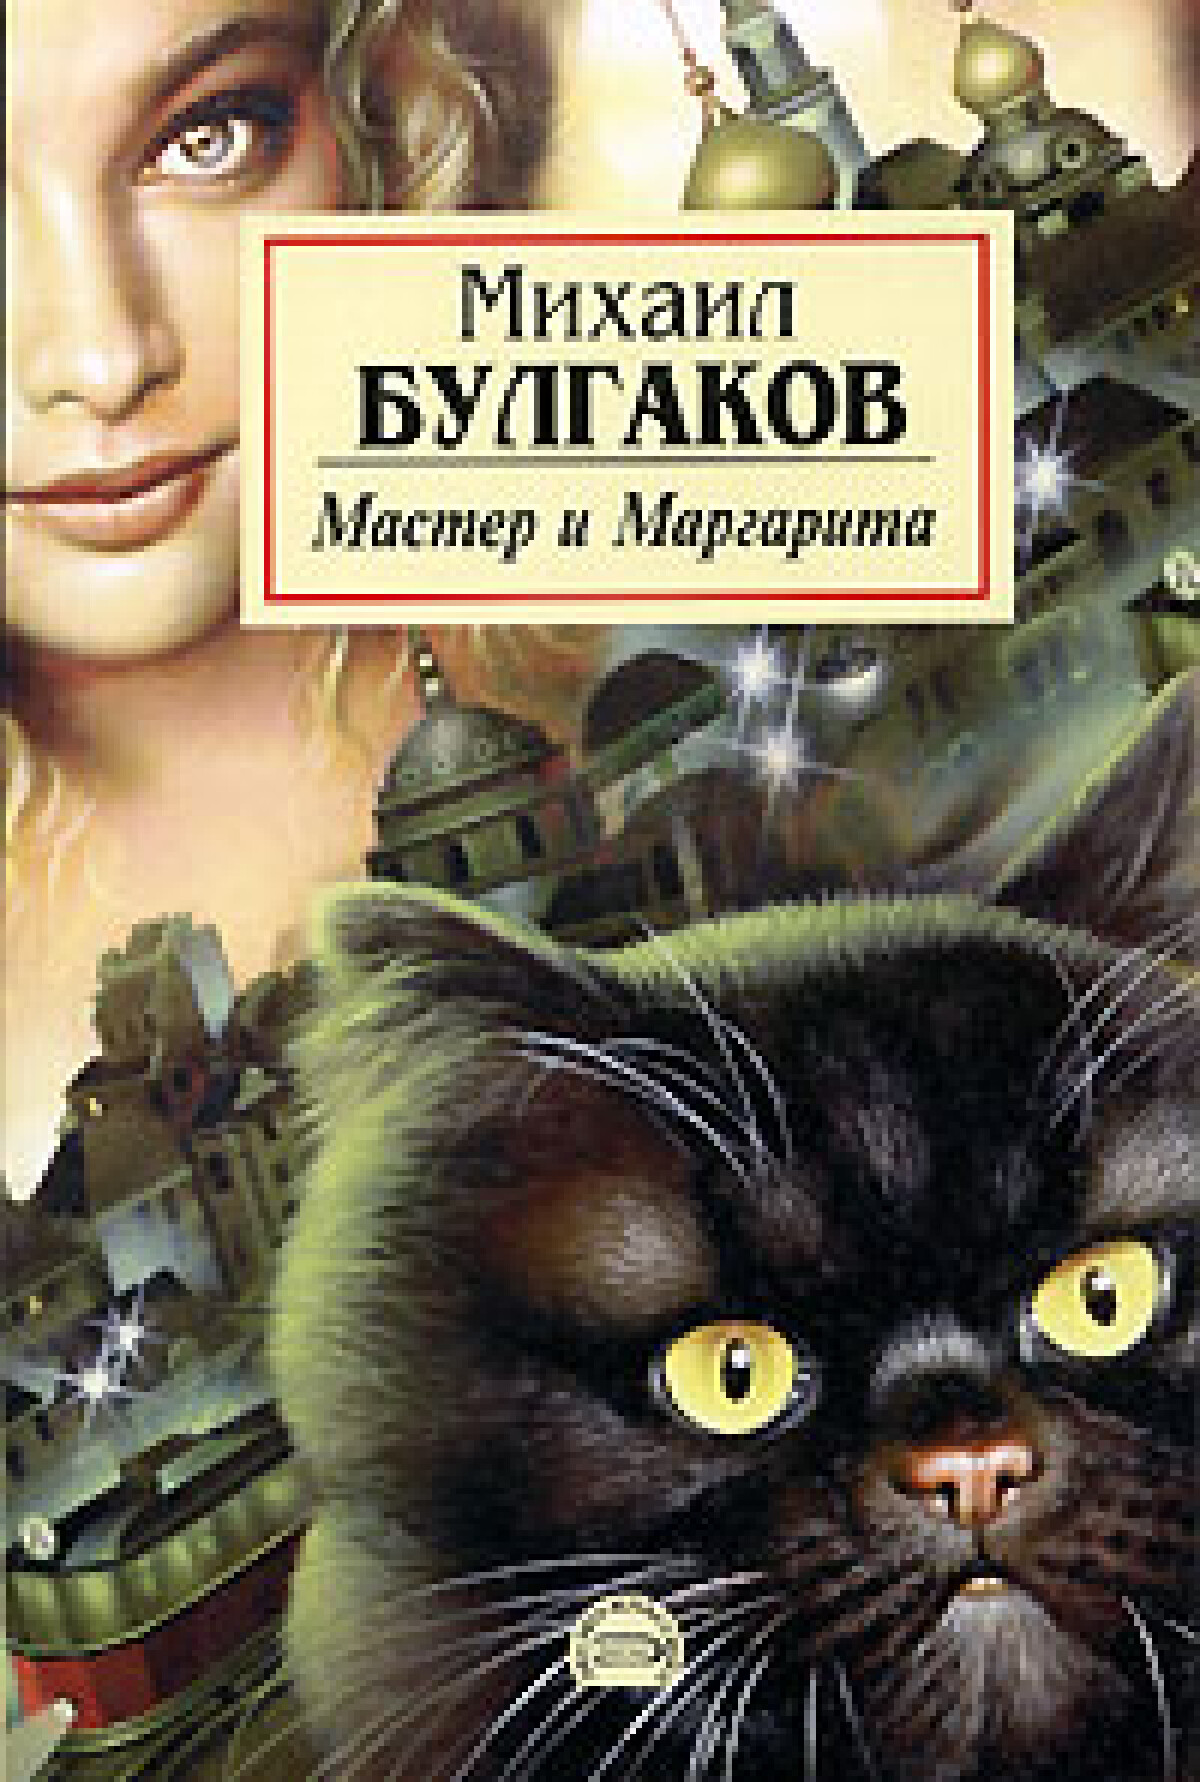 Ефремов читает мастера и маргариту